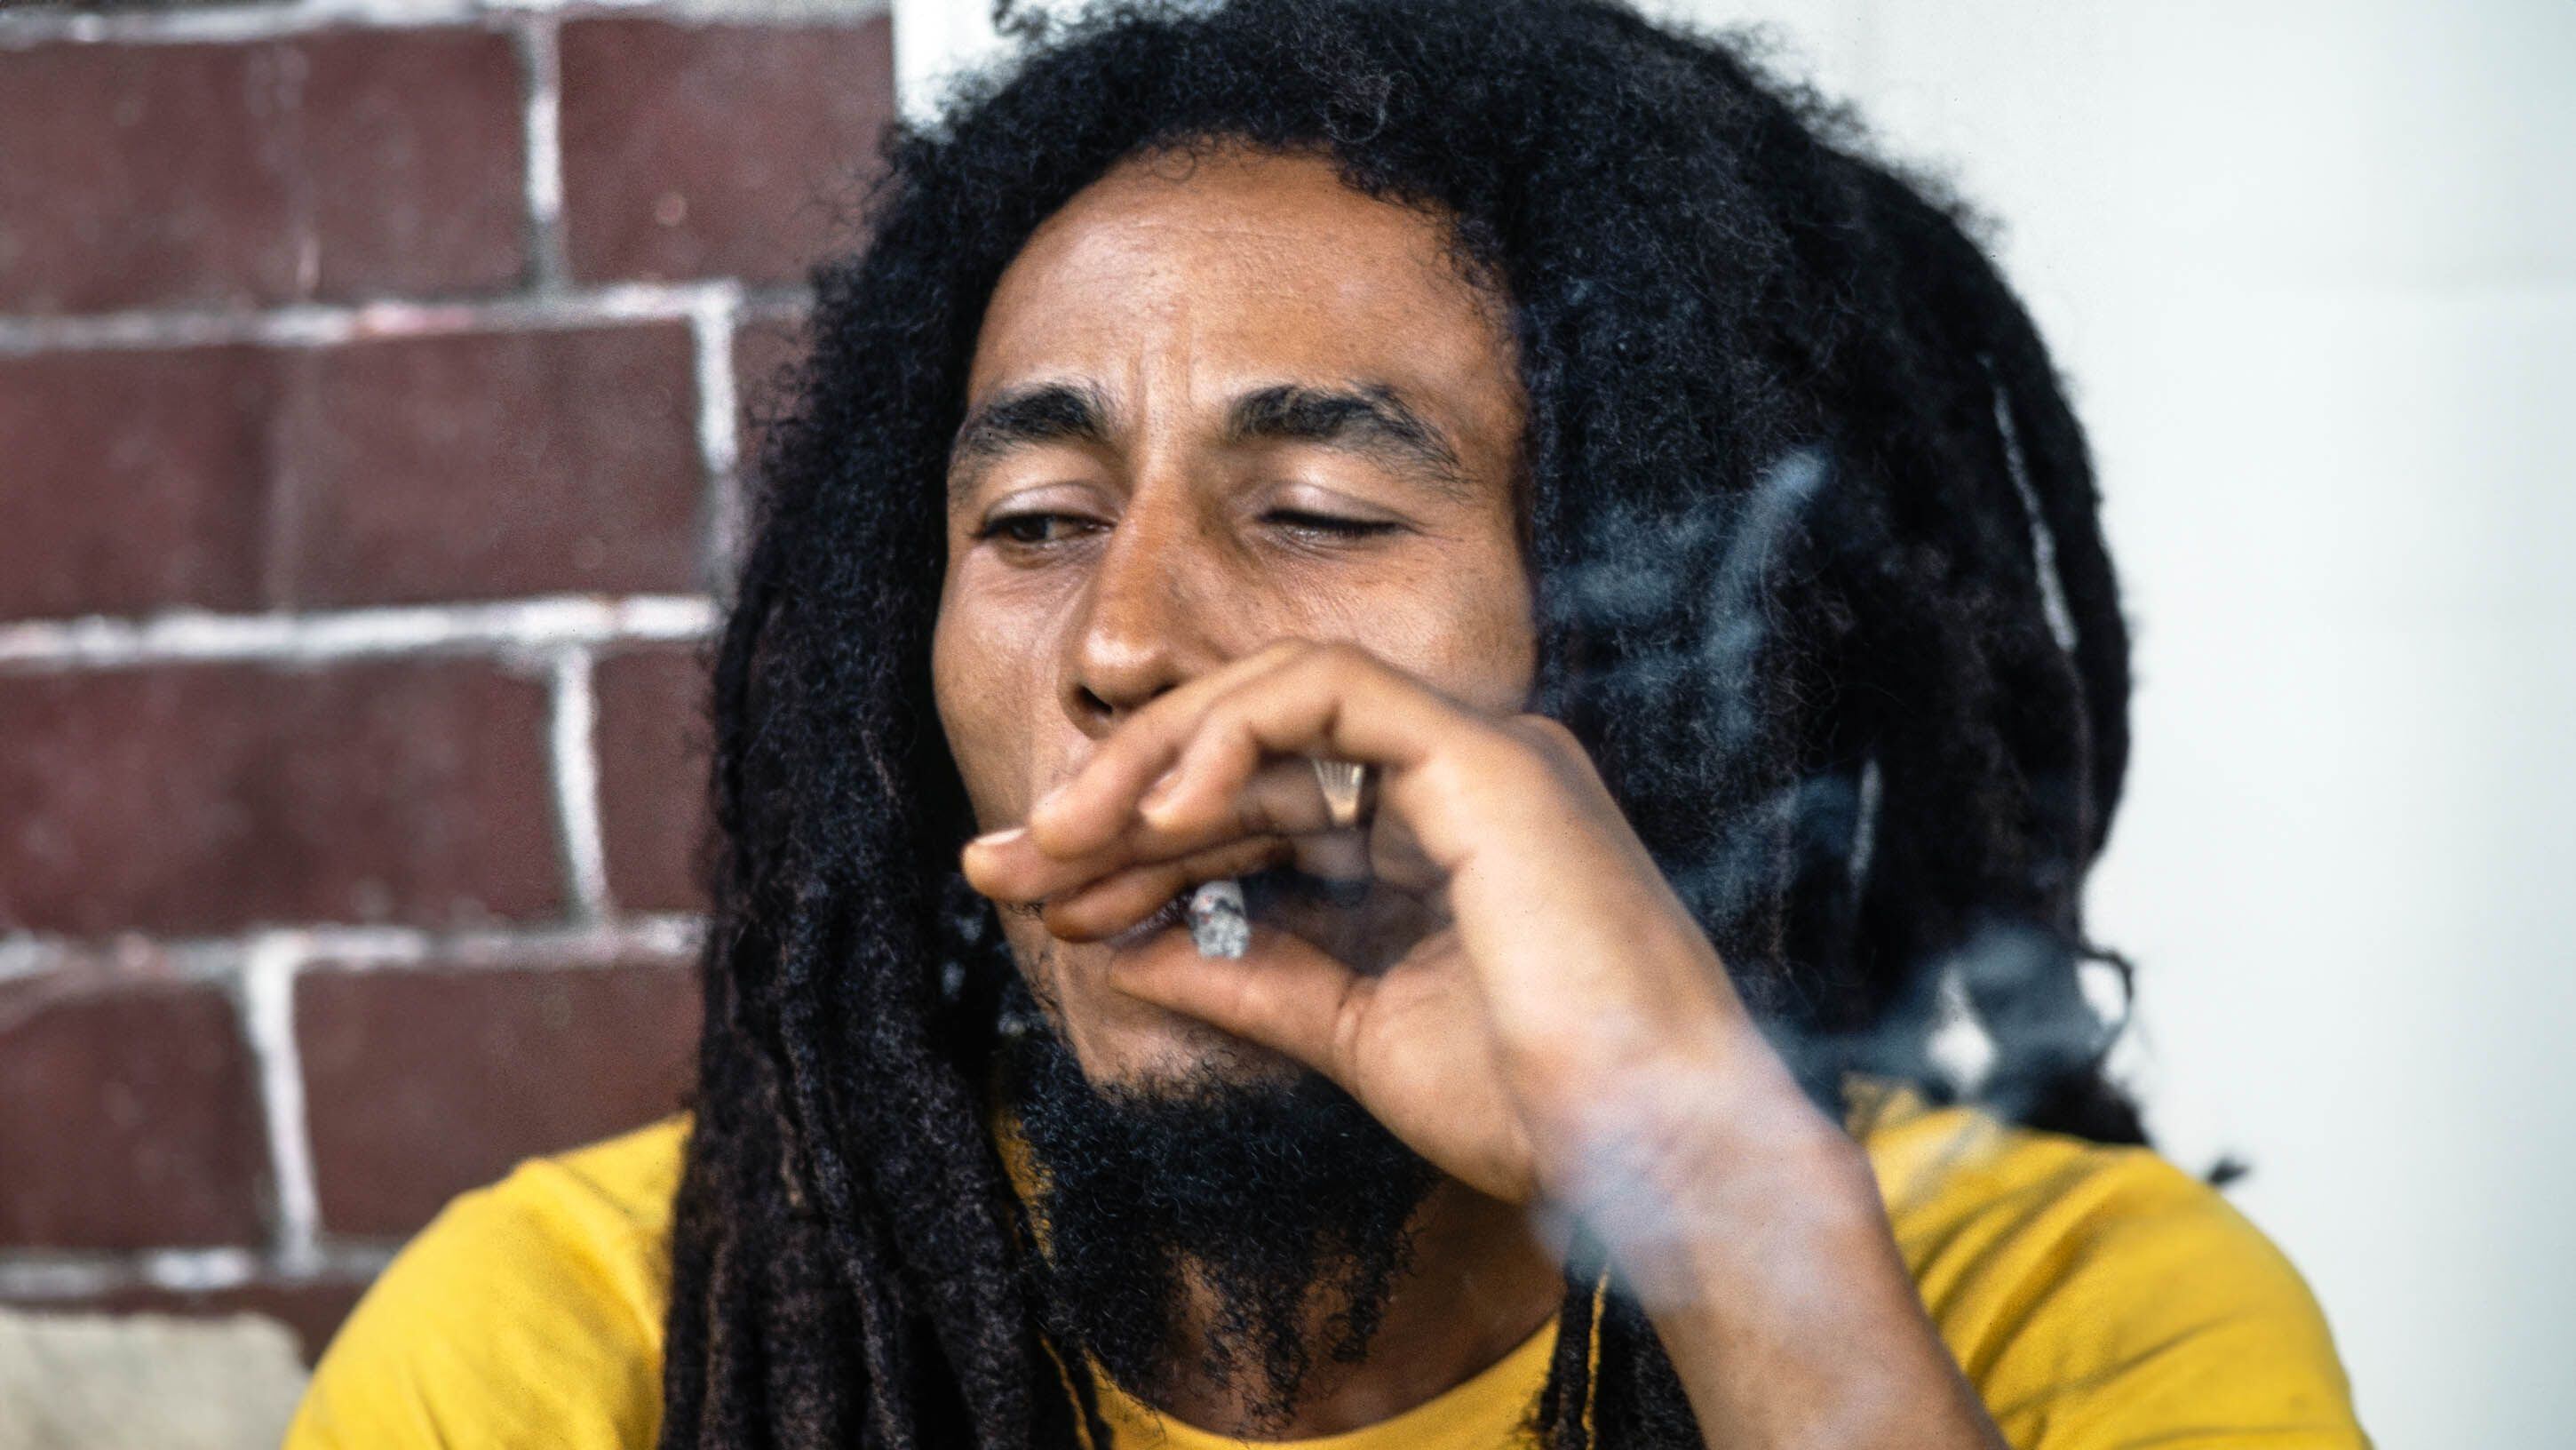 Bob Marley y su vínculo religioso con la marihuana: “La planta te hace ver  que sos dueño de vos mismo” - Lado.mx